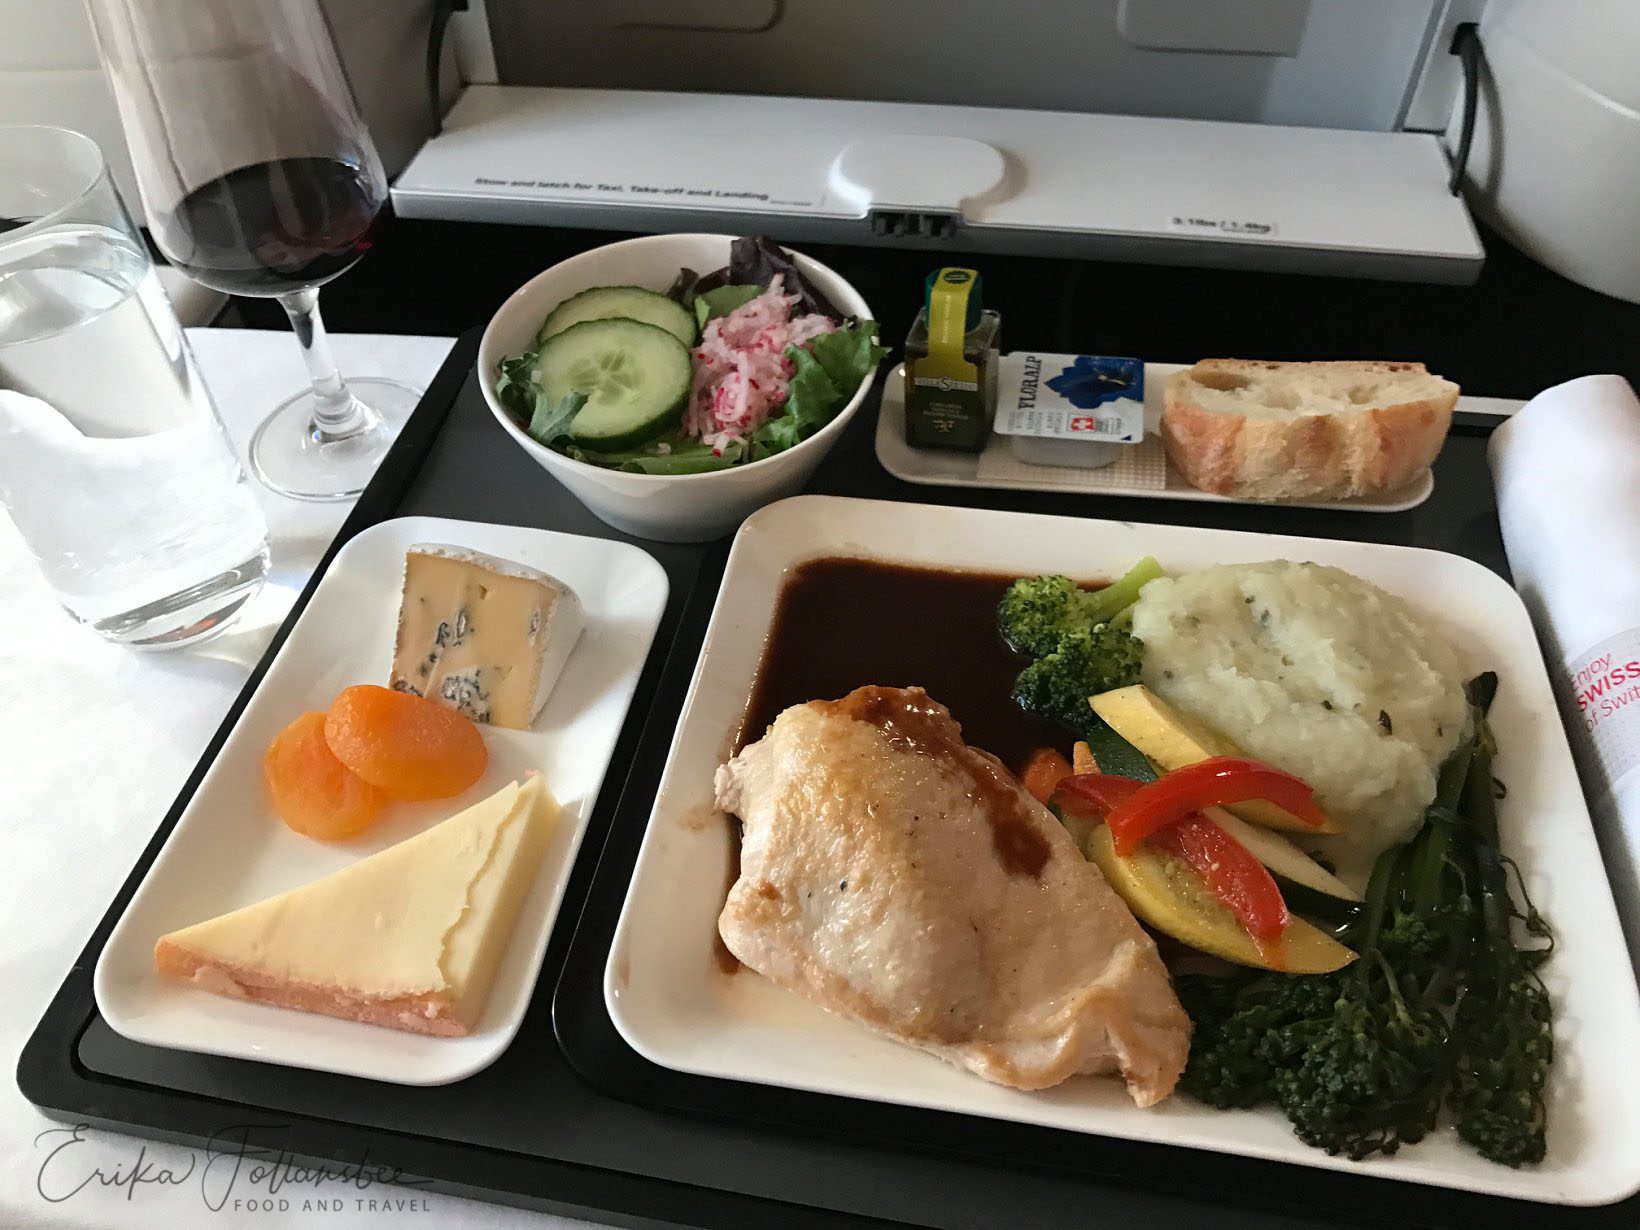 Swiss Air Business Class Menu Dinner